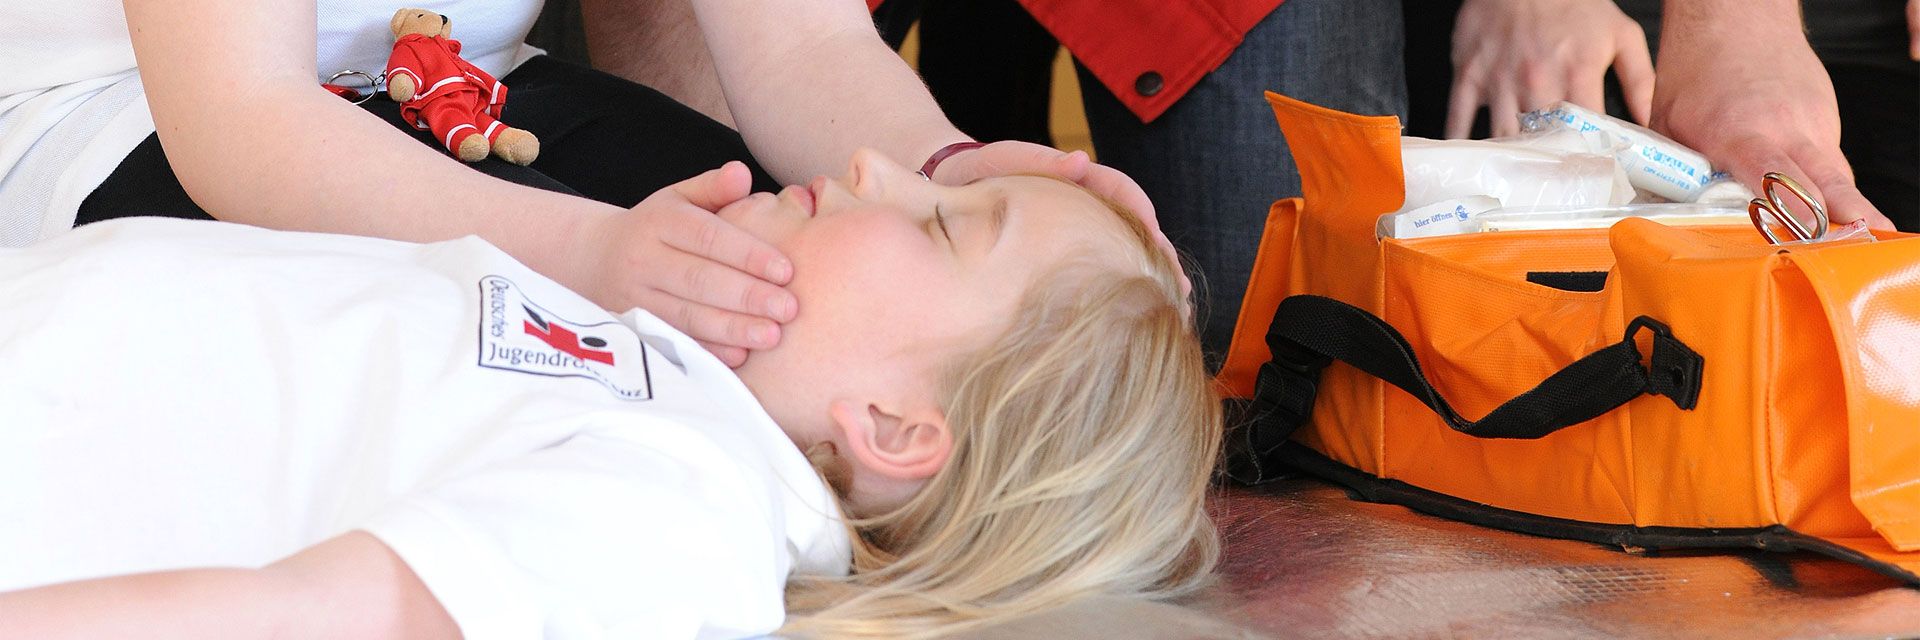 Bild: Bei einer Erste-Hilfe-Übung liegt ein Kind bewusstlos am Boden.